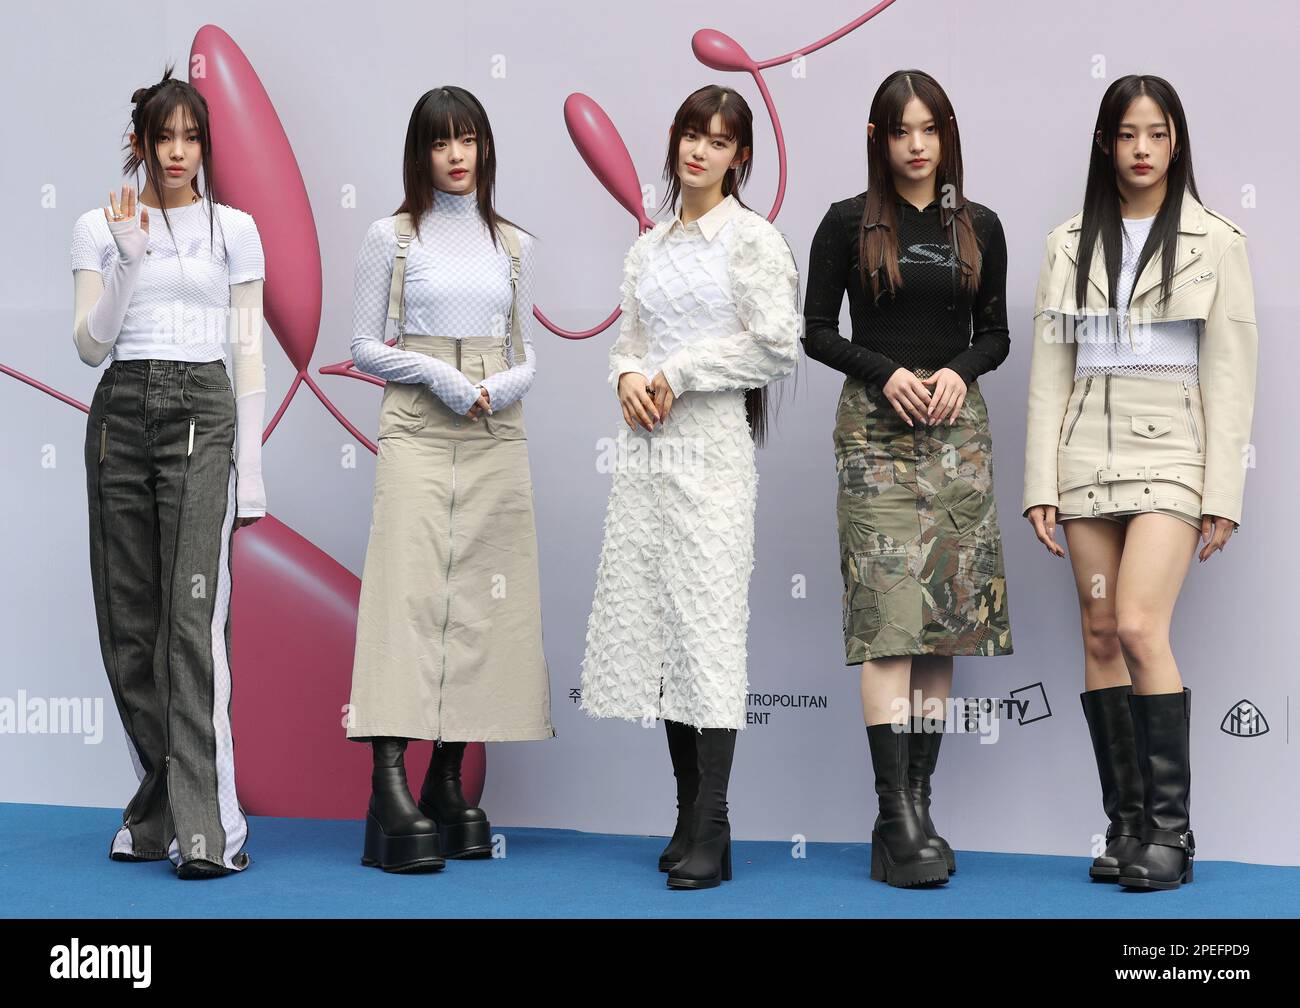 Group Of Girls Posing In Designer Dresses. Girls Model In Designer